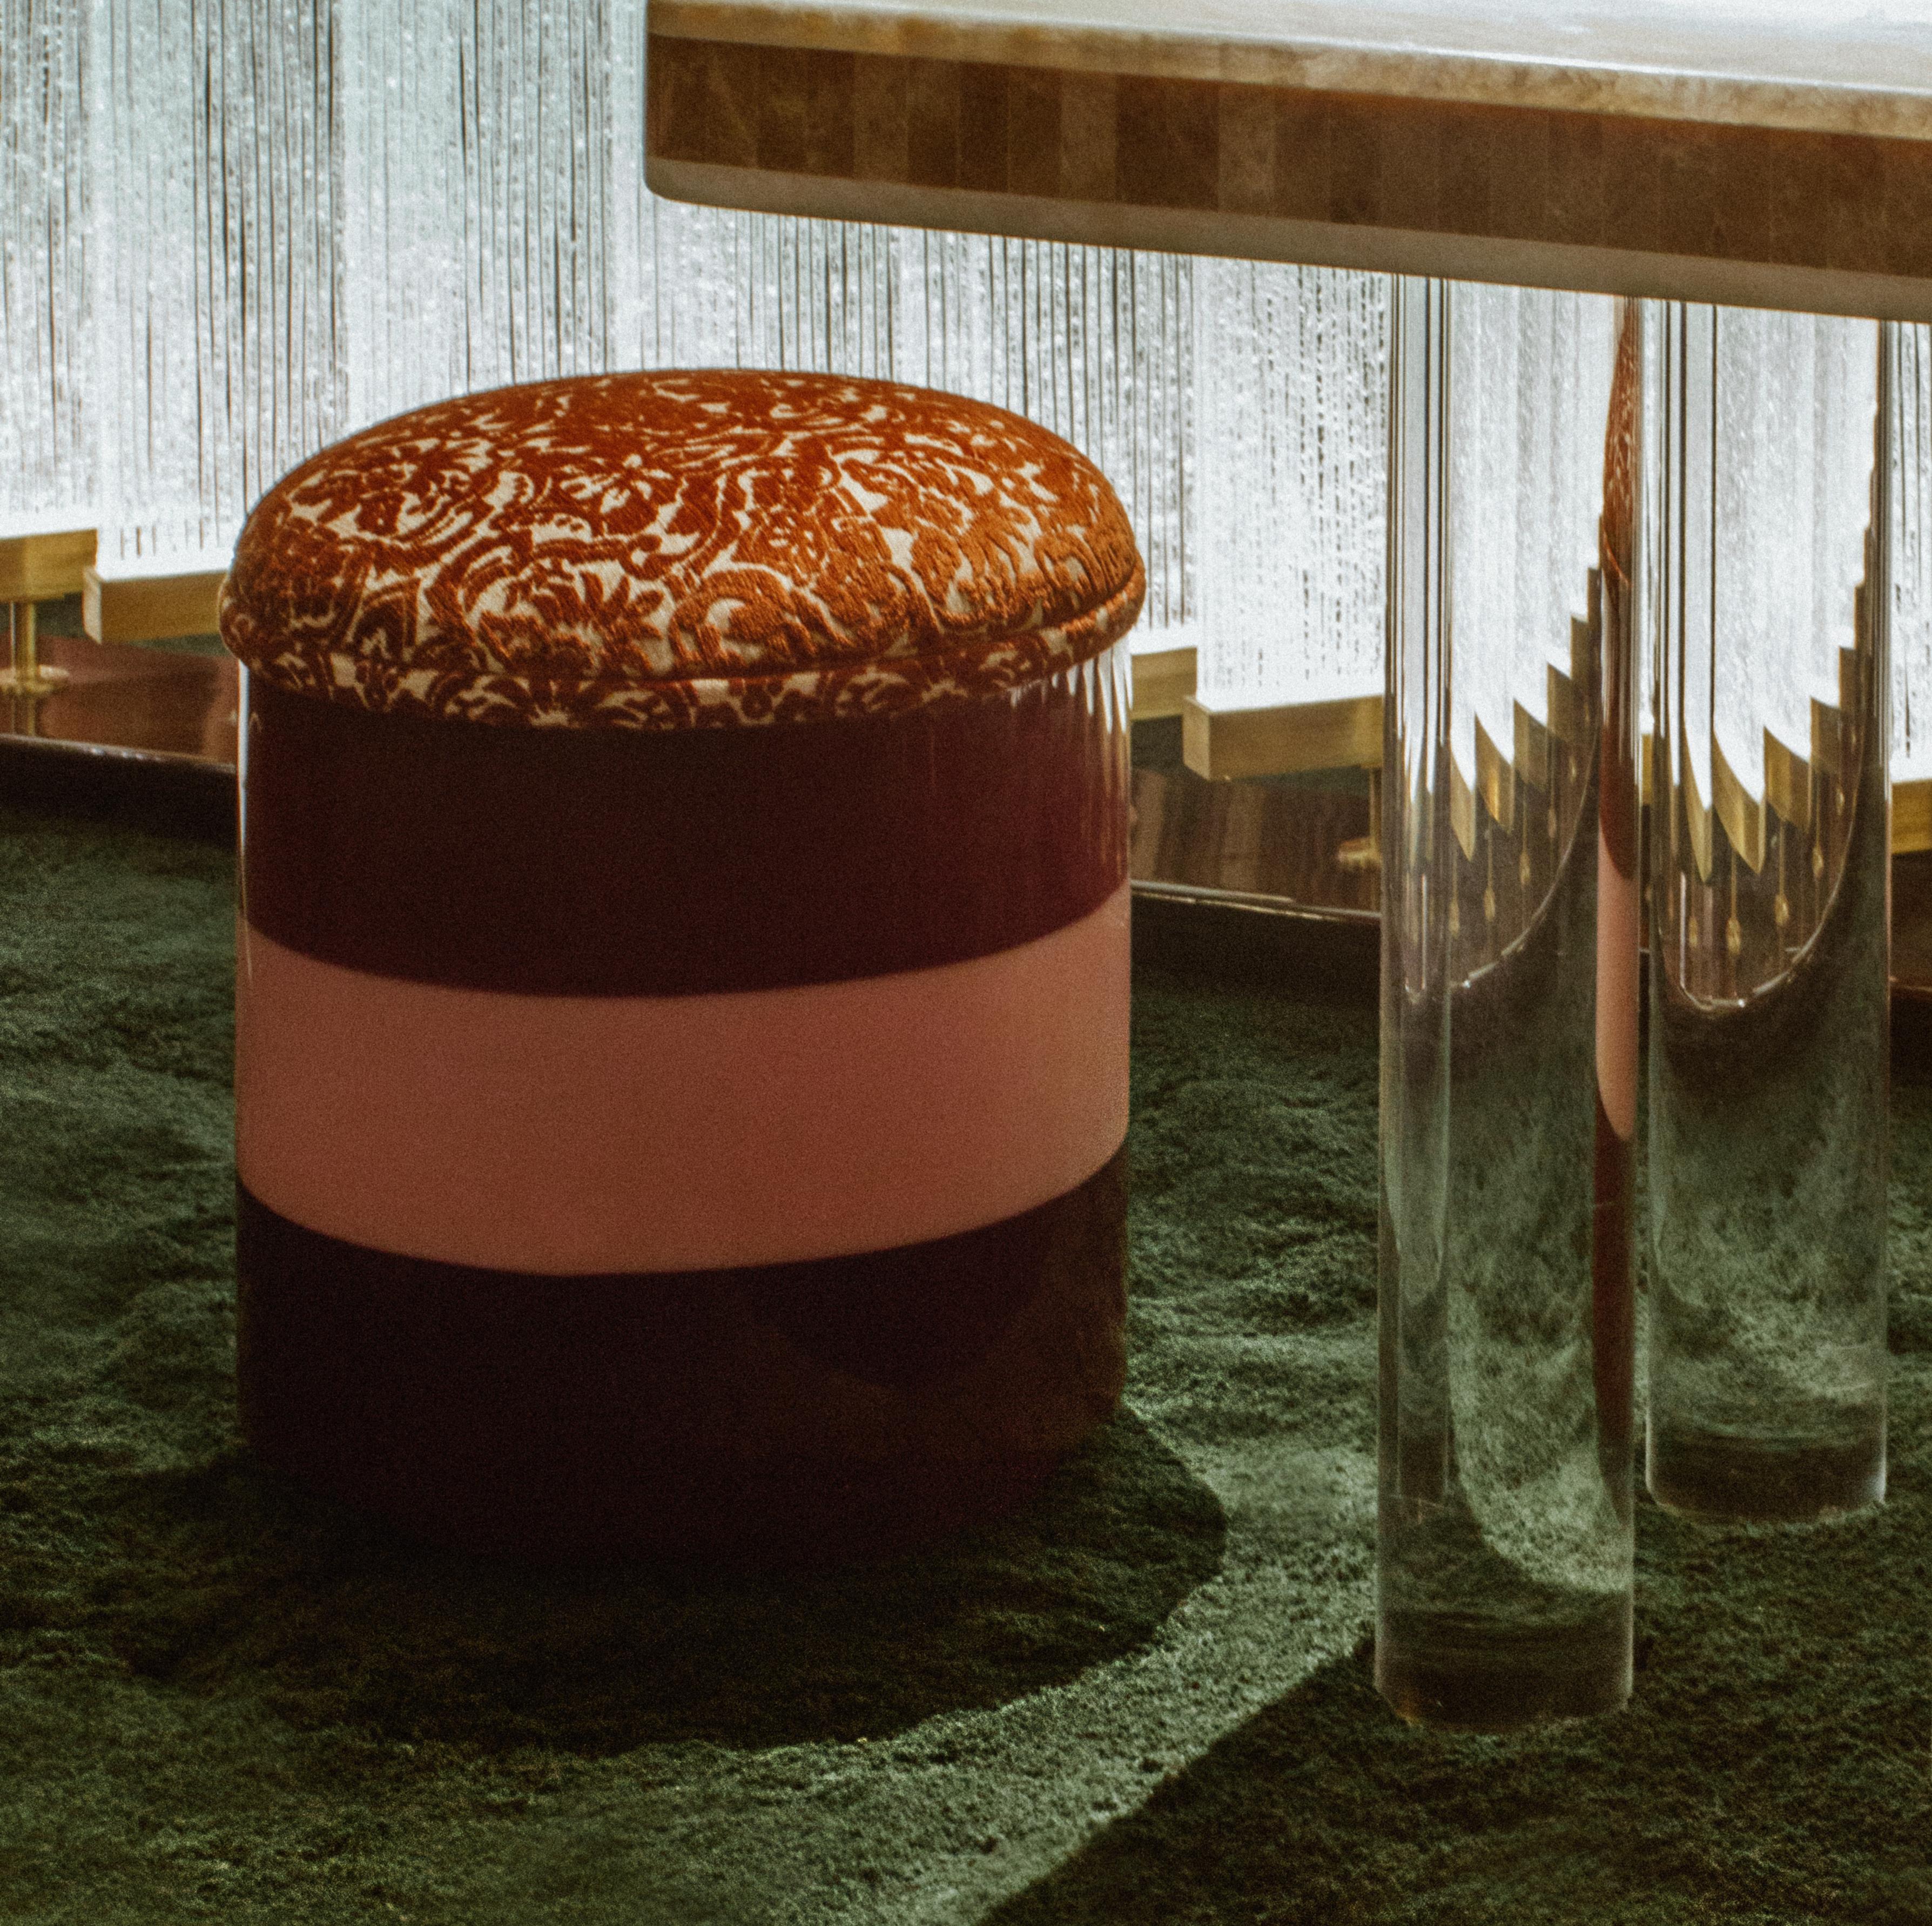 Pouf cylindrique et pivotant conçu par Laura Gonzalez avec un revêtement tricolore. Assise garnie d'ambre de Damas par la Maison Maison française Pierre Frey. Tout est fabriqué en France.